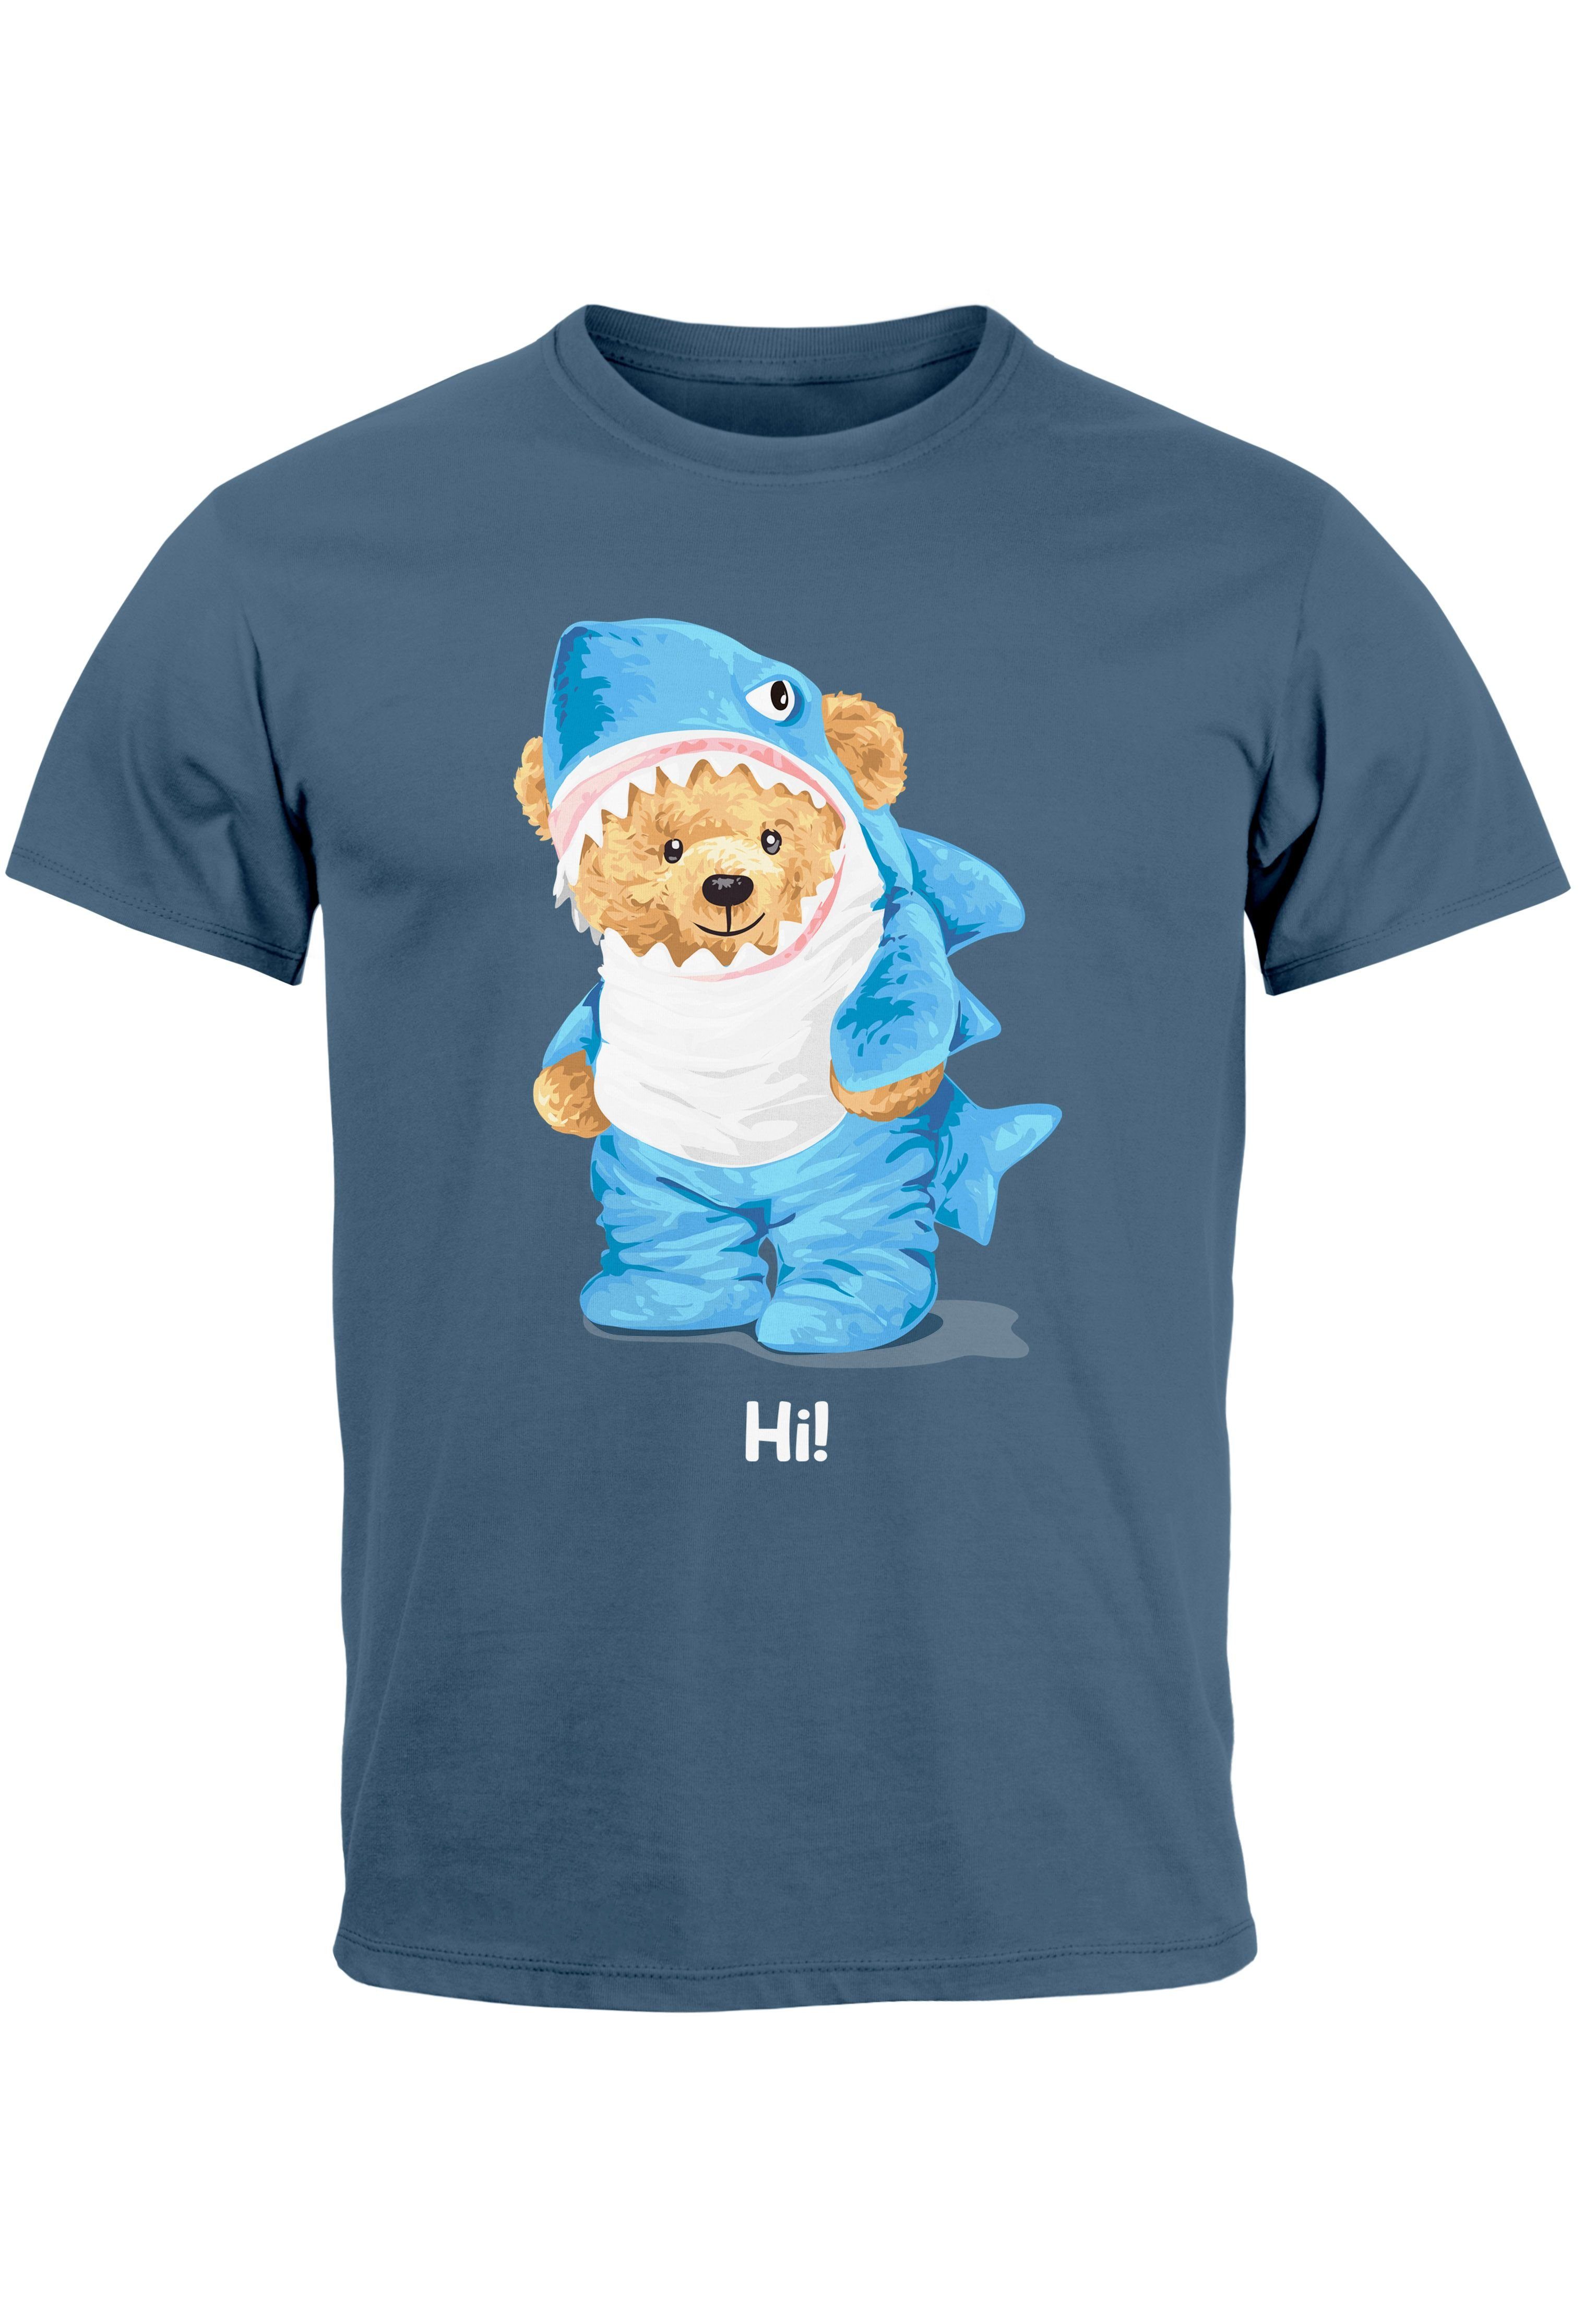 Neverless Print-Shirt Herren T-Shirt Hai Hi Teddy Bär Witz Parodie Printshirt Aufdruck Fashi mit Print denim blue